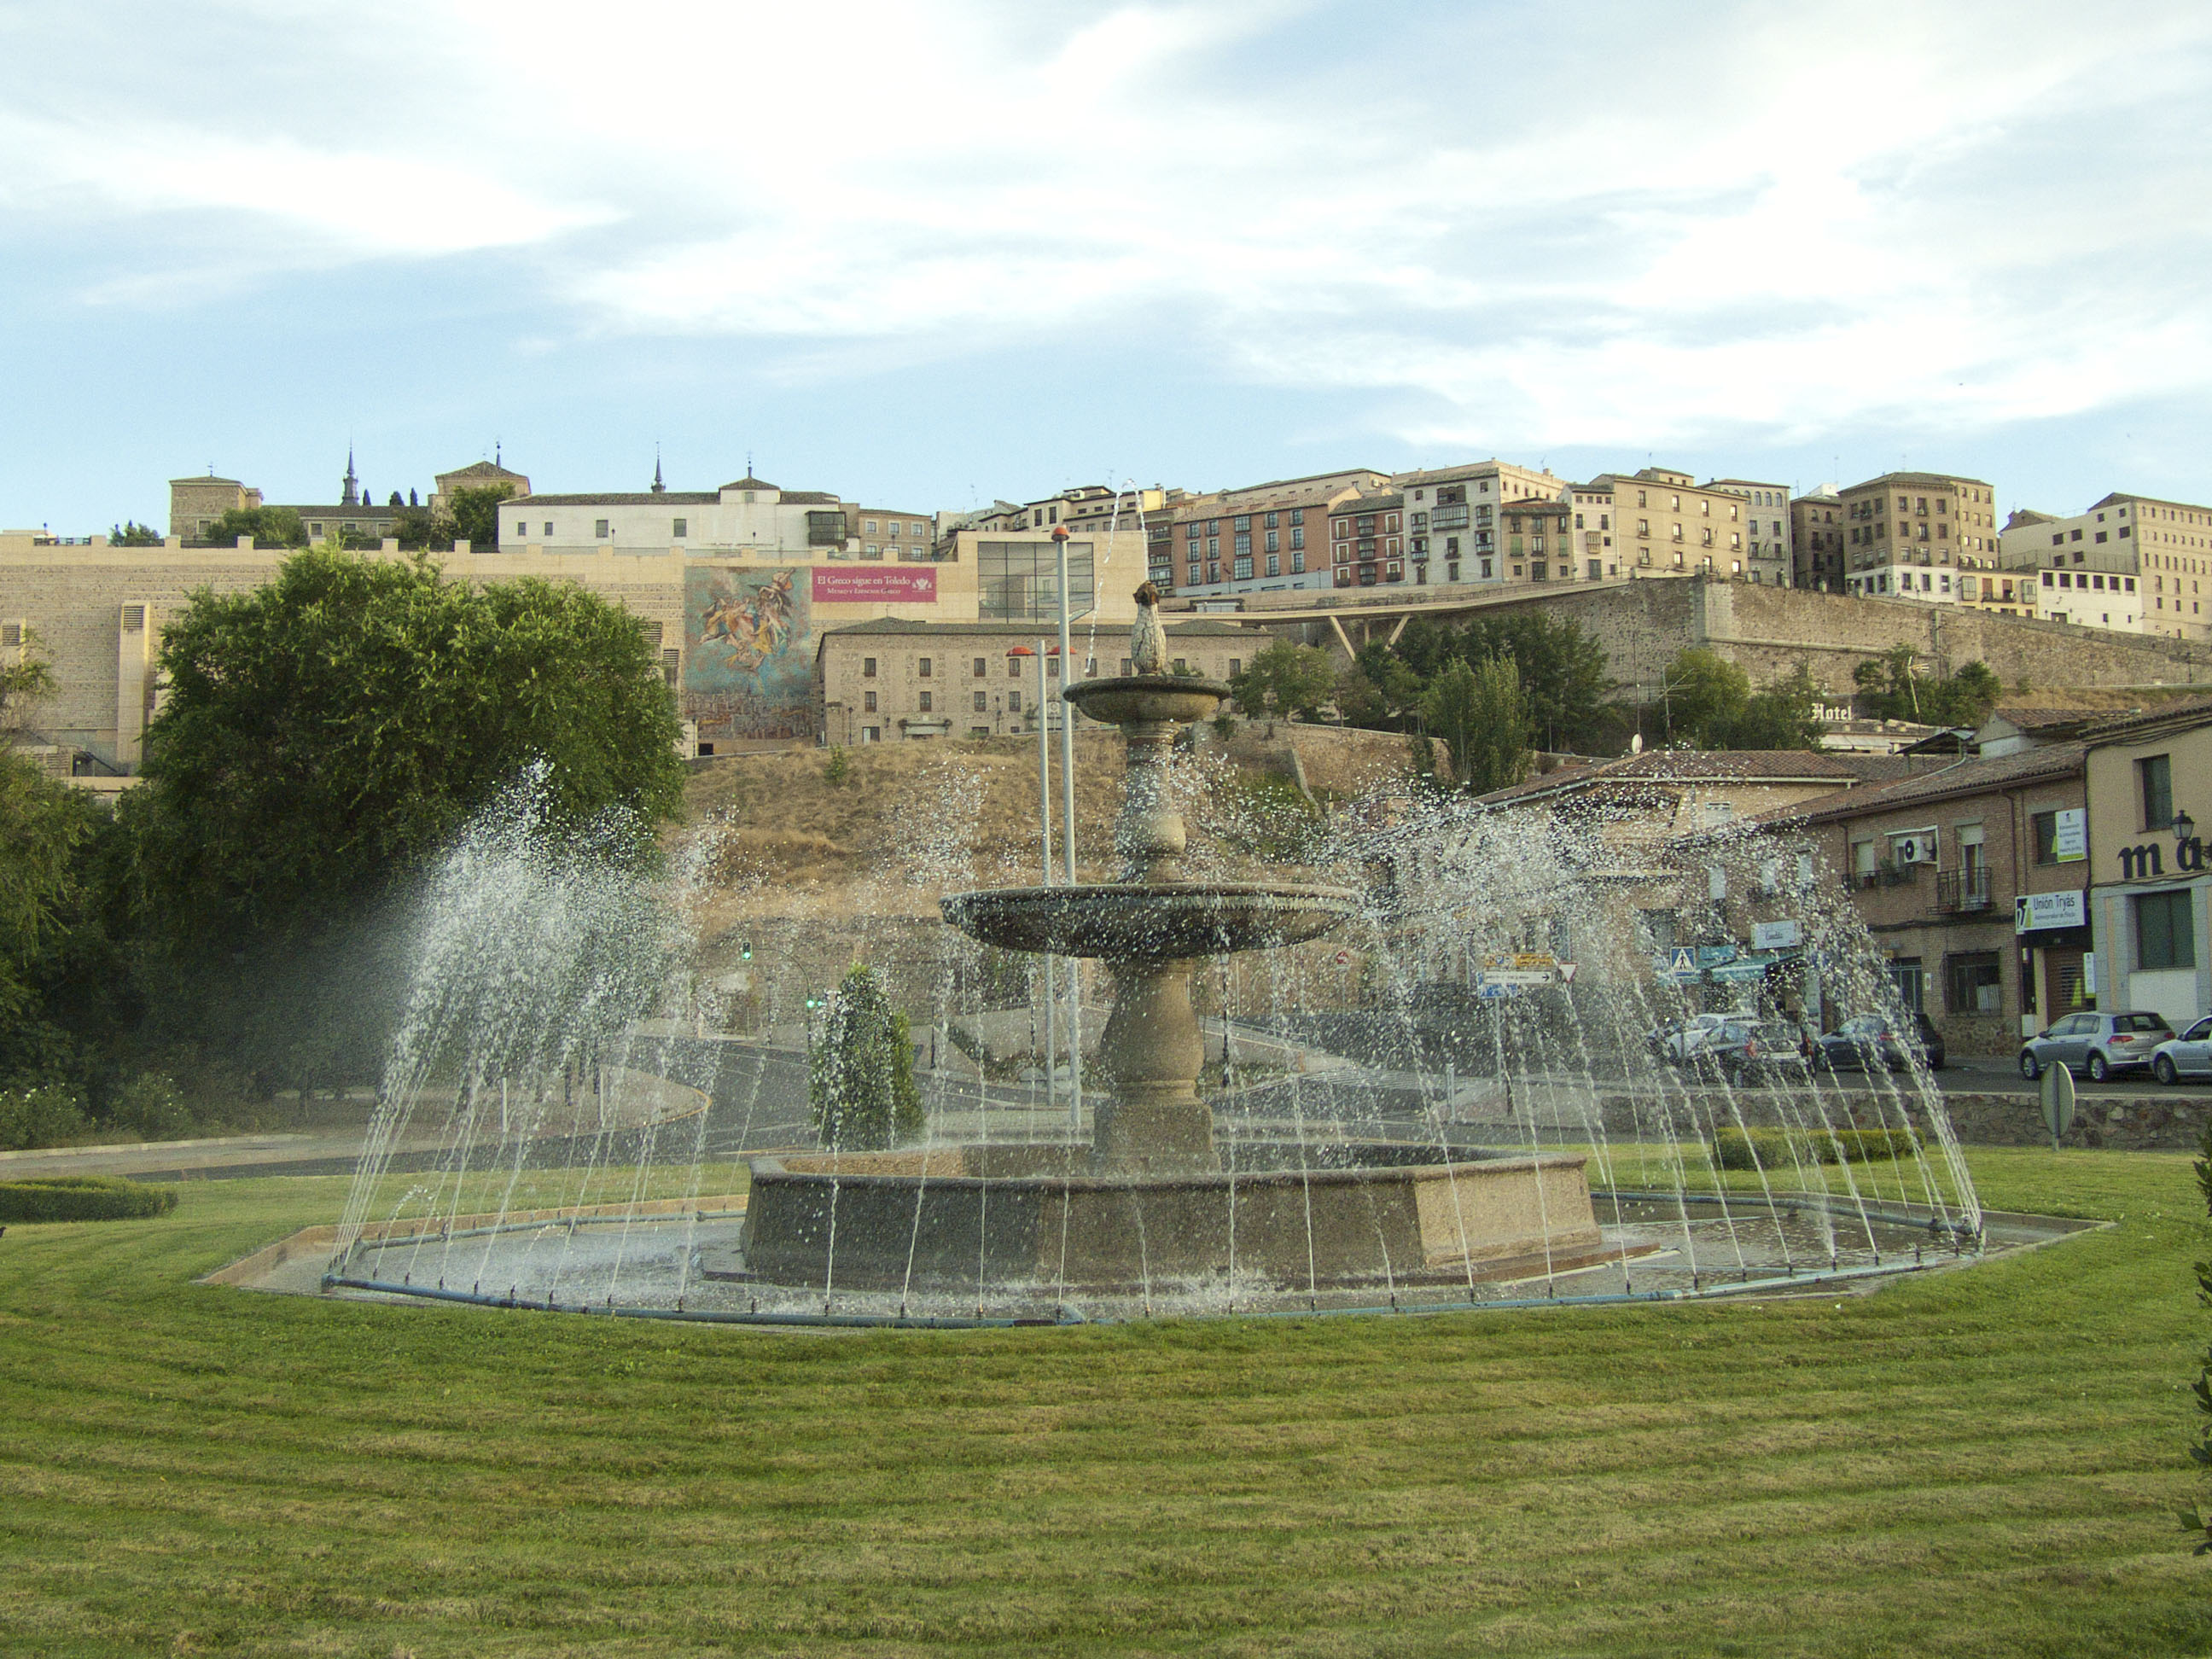 Las principales fuentes ornamentales de Toledo vuelven a estar activas a diario en verano